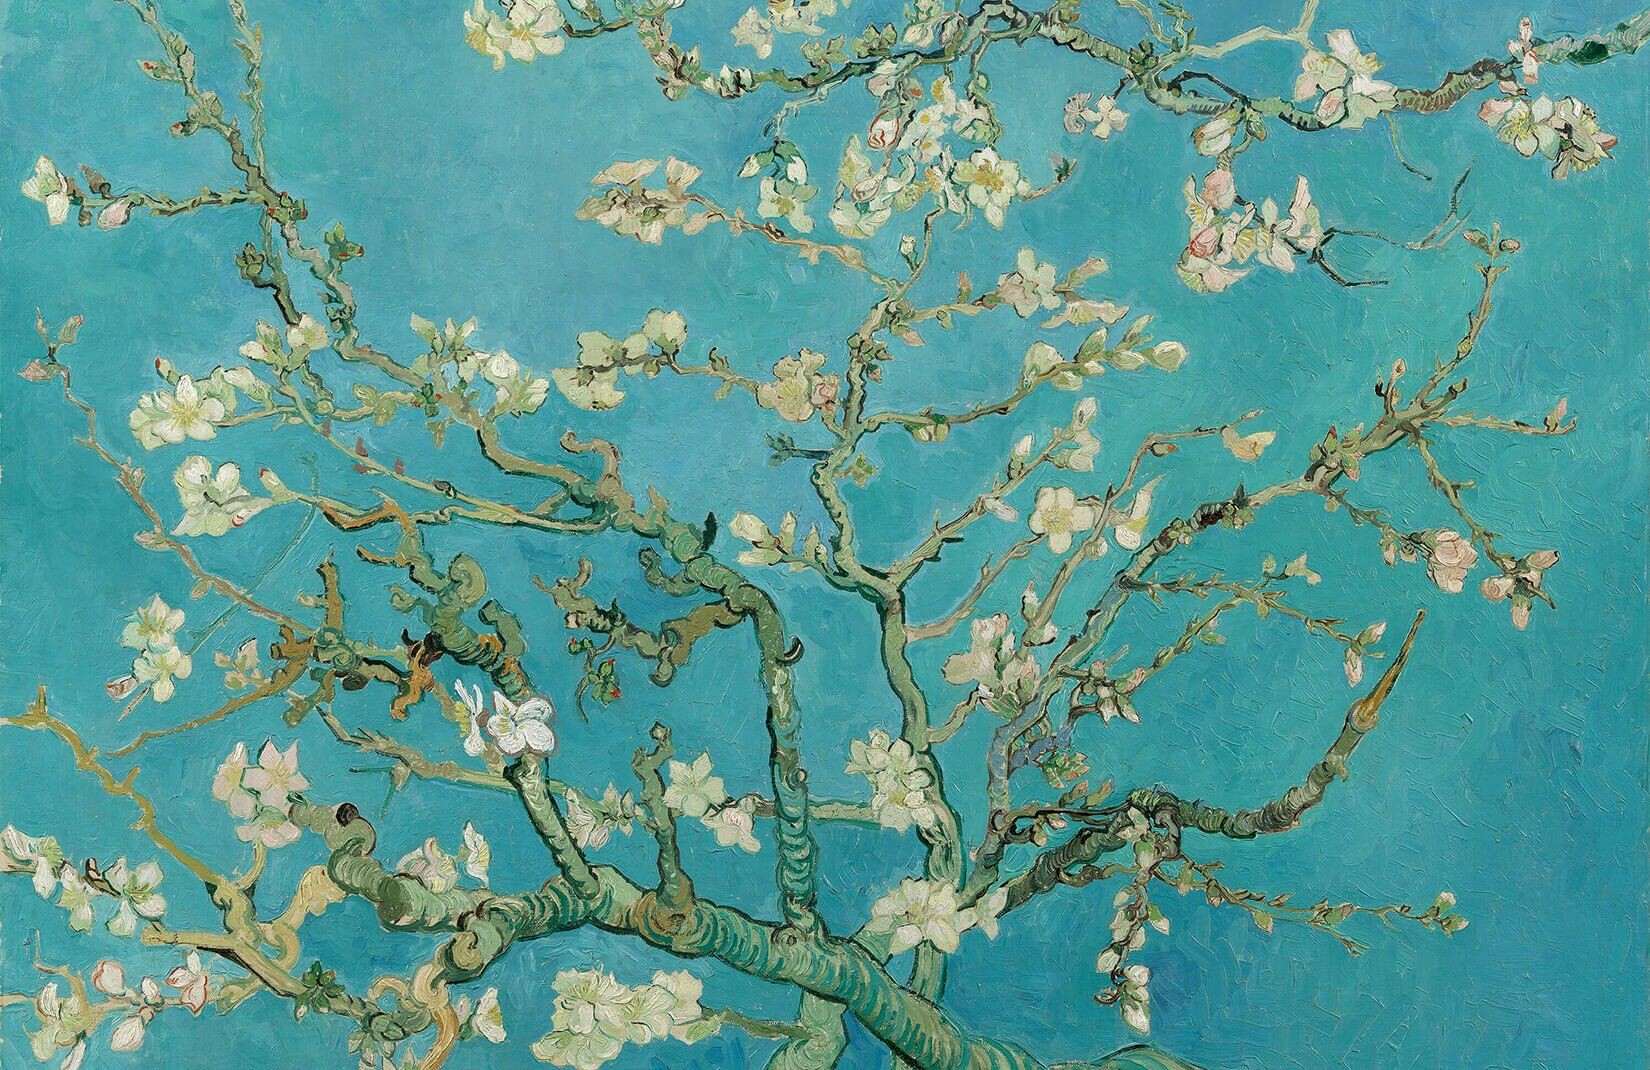 Hình nền Van Gogh HD: Với chất lượng HD vượt trội, hình nền Van Gogh này sẽ làm bạn ngỡ ngàng với những chi tiết tinh tế và mịn màng, cho tới từng nét vẽ mềm mại của nghệ sĩ tài hoa này. Hãy cập nhật không gian làm việc hay học tập của mình ngay hôm nay!